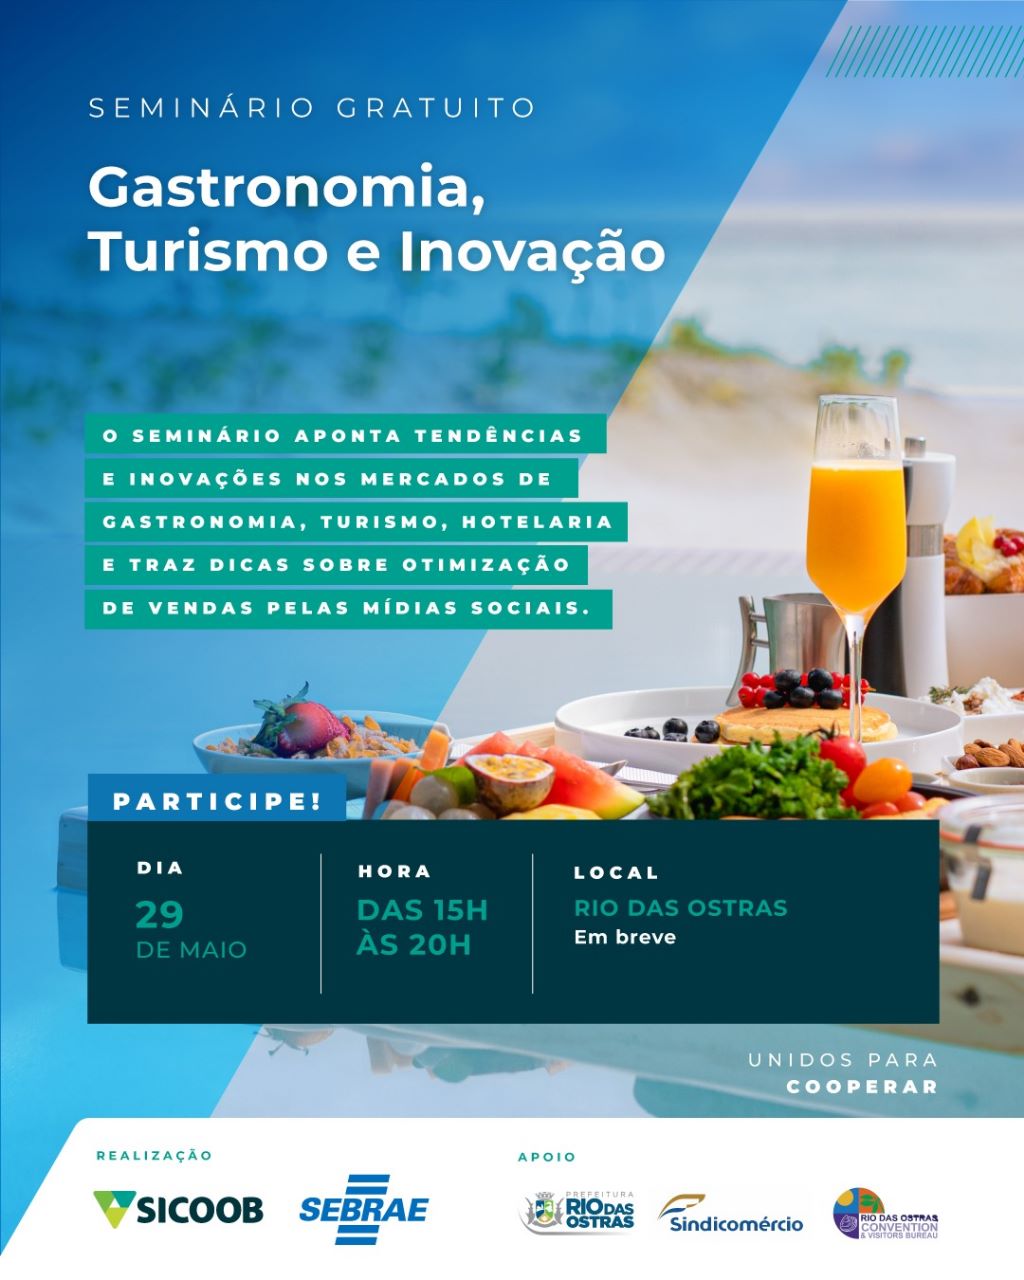 Sicoob Rio e Sebrae Rio promovem seminário gratuito em Rio das Ostras dedicado ao turismo, hotelaria e gastronomia (Foto: Divulgação)